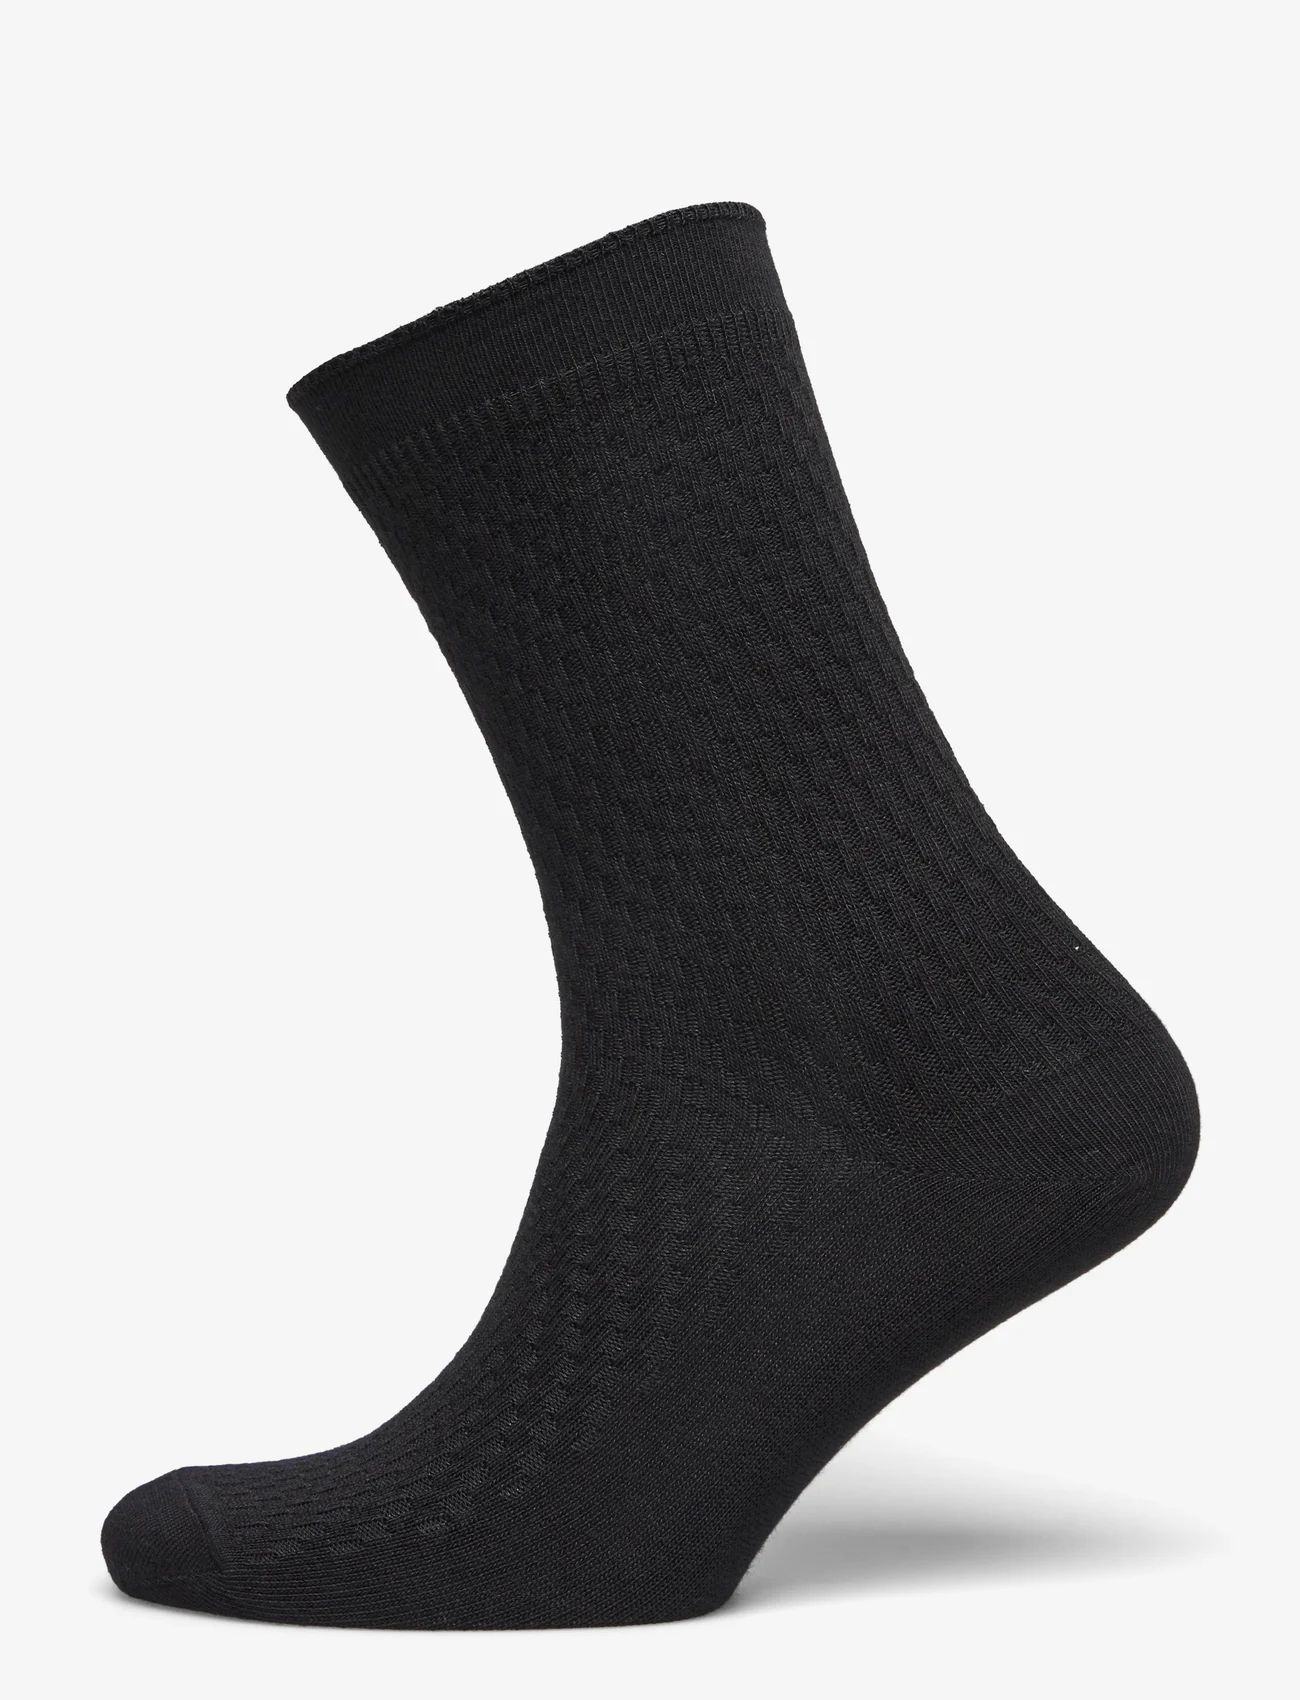 mp Denmark - Greta socks - lowest prices - black - 0